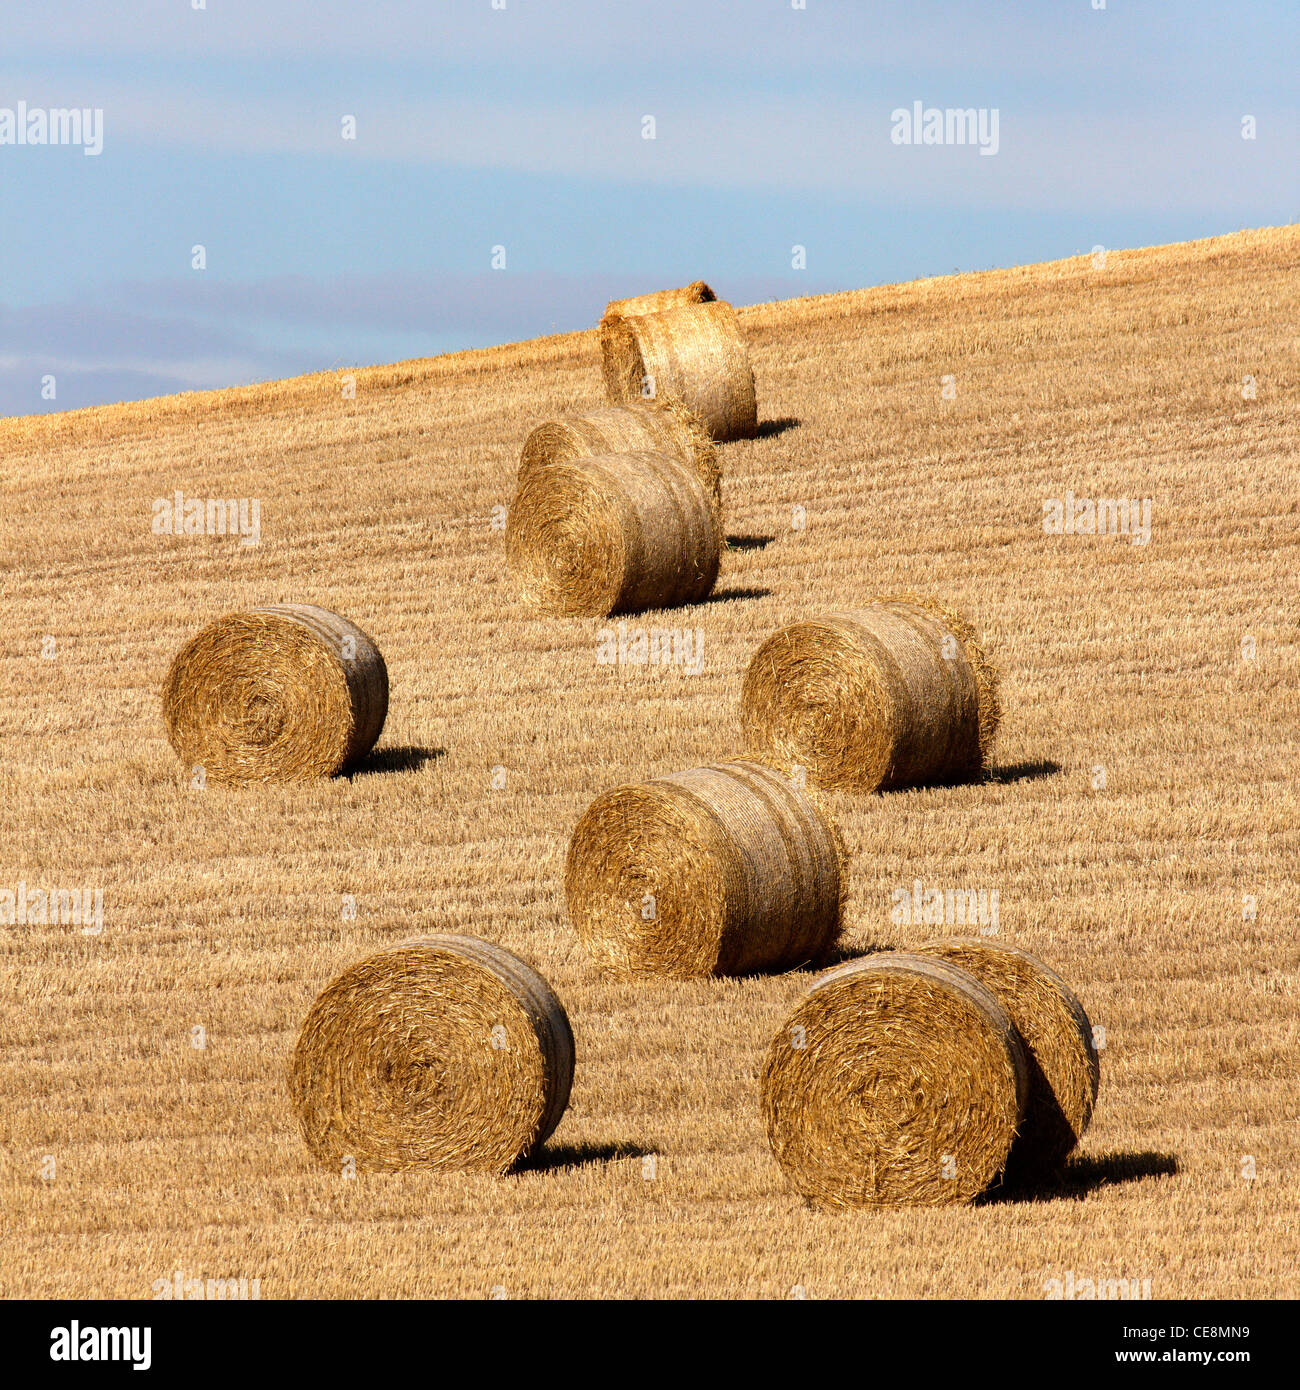 Les grosses bottes de foin dans un champ de maïs coupé pendant la récolte, Leicestershire, England, UK Banque D'Images